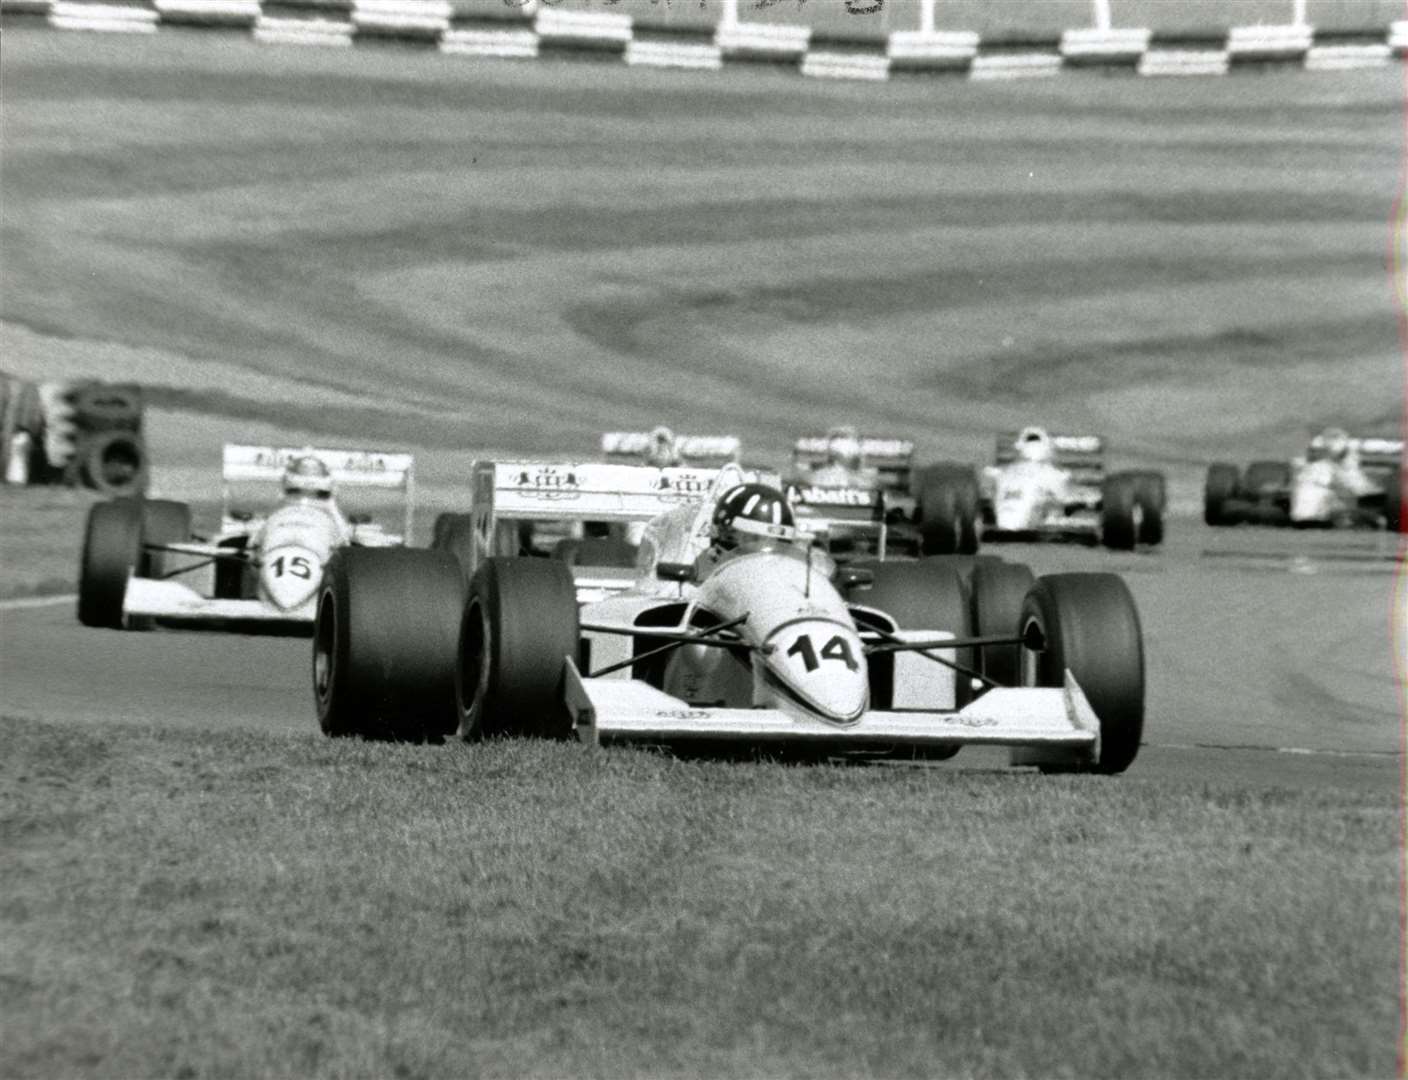 Damon enters Surtees at Brands Hatch in a Formula 3000 thrash